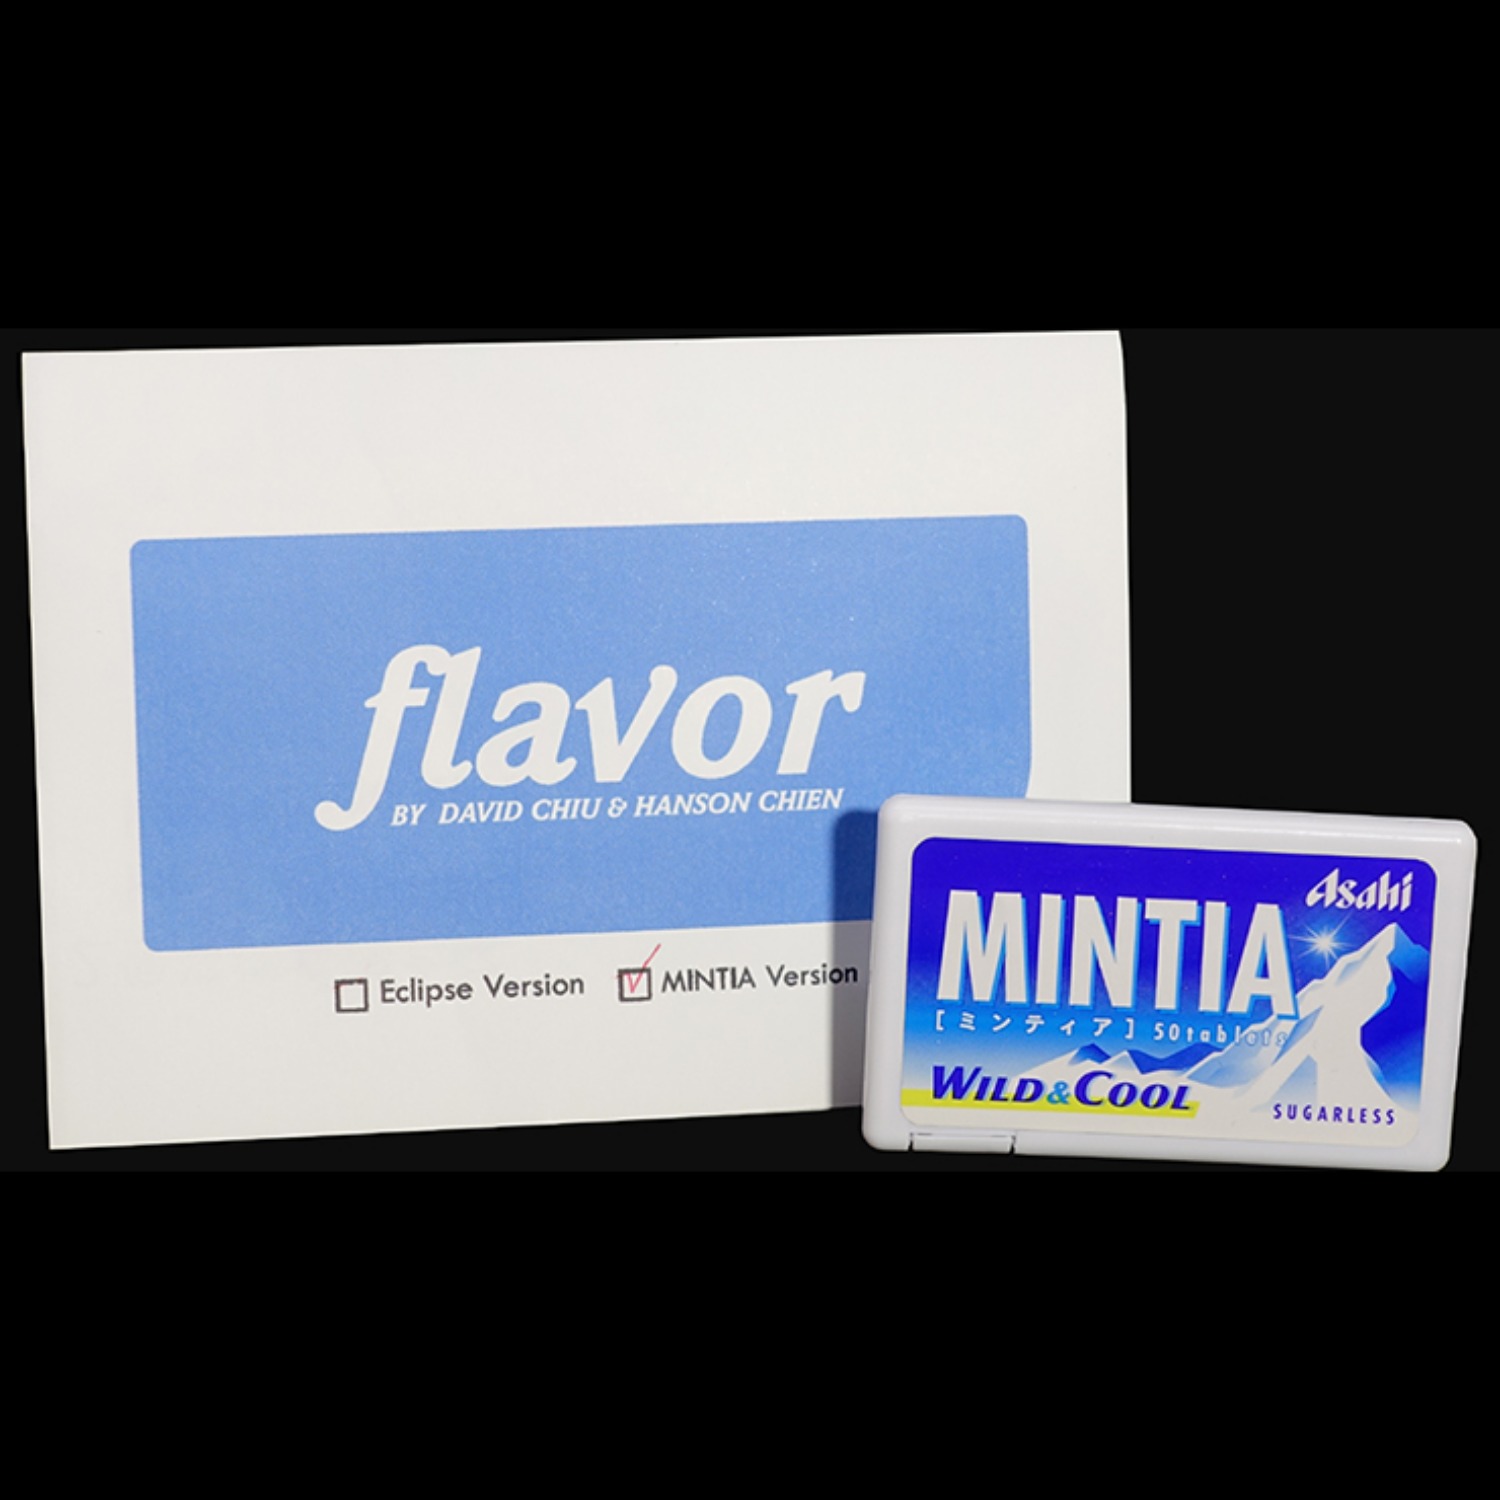 [플레이버 민티아 에디션]Flavor Mintia Edition  by David Chiu and Hanson Chien - 캔디 케이스가 순식간에 바뀌는 놀라운 마술을 연출하실 수 있습니다.